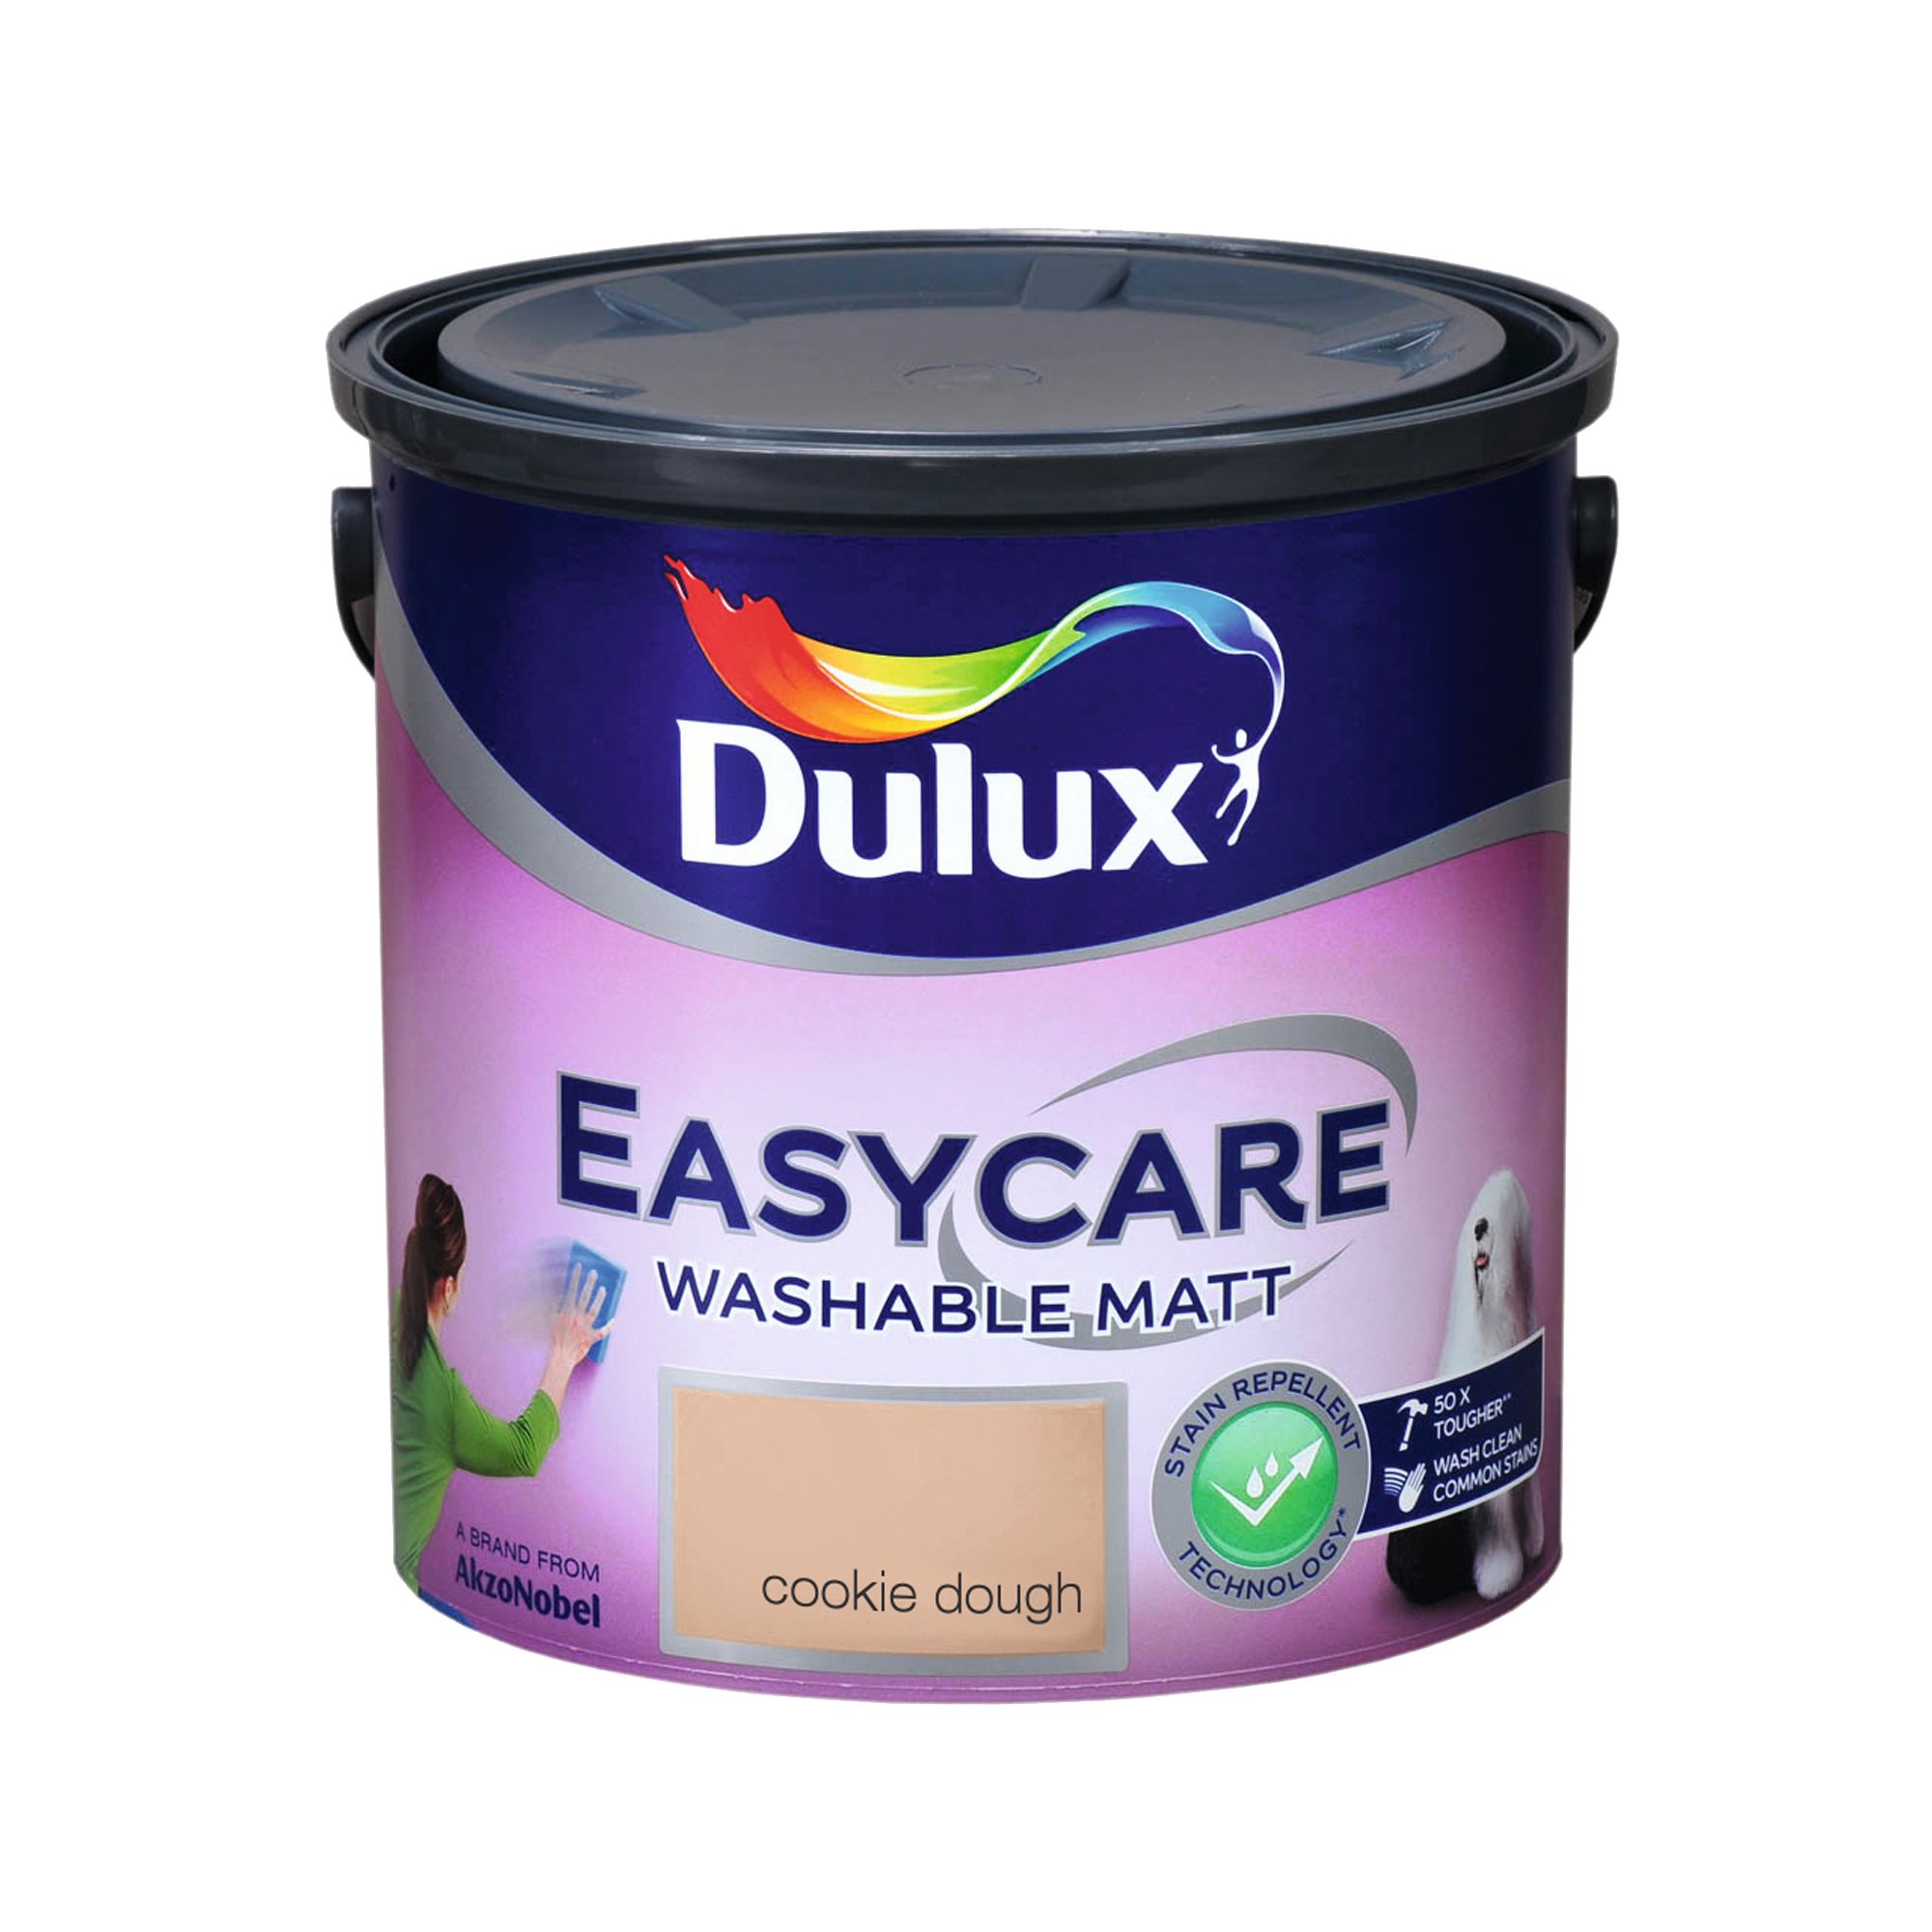 Dulux Easycare Cookie dough Flat matt Emulsion paint, 2.5L